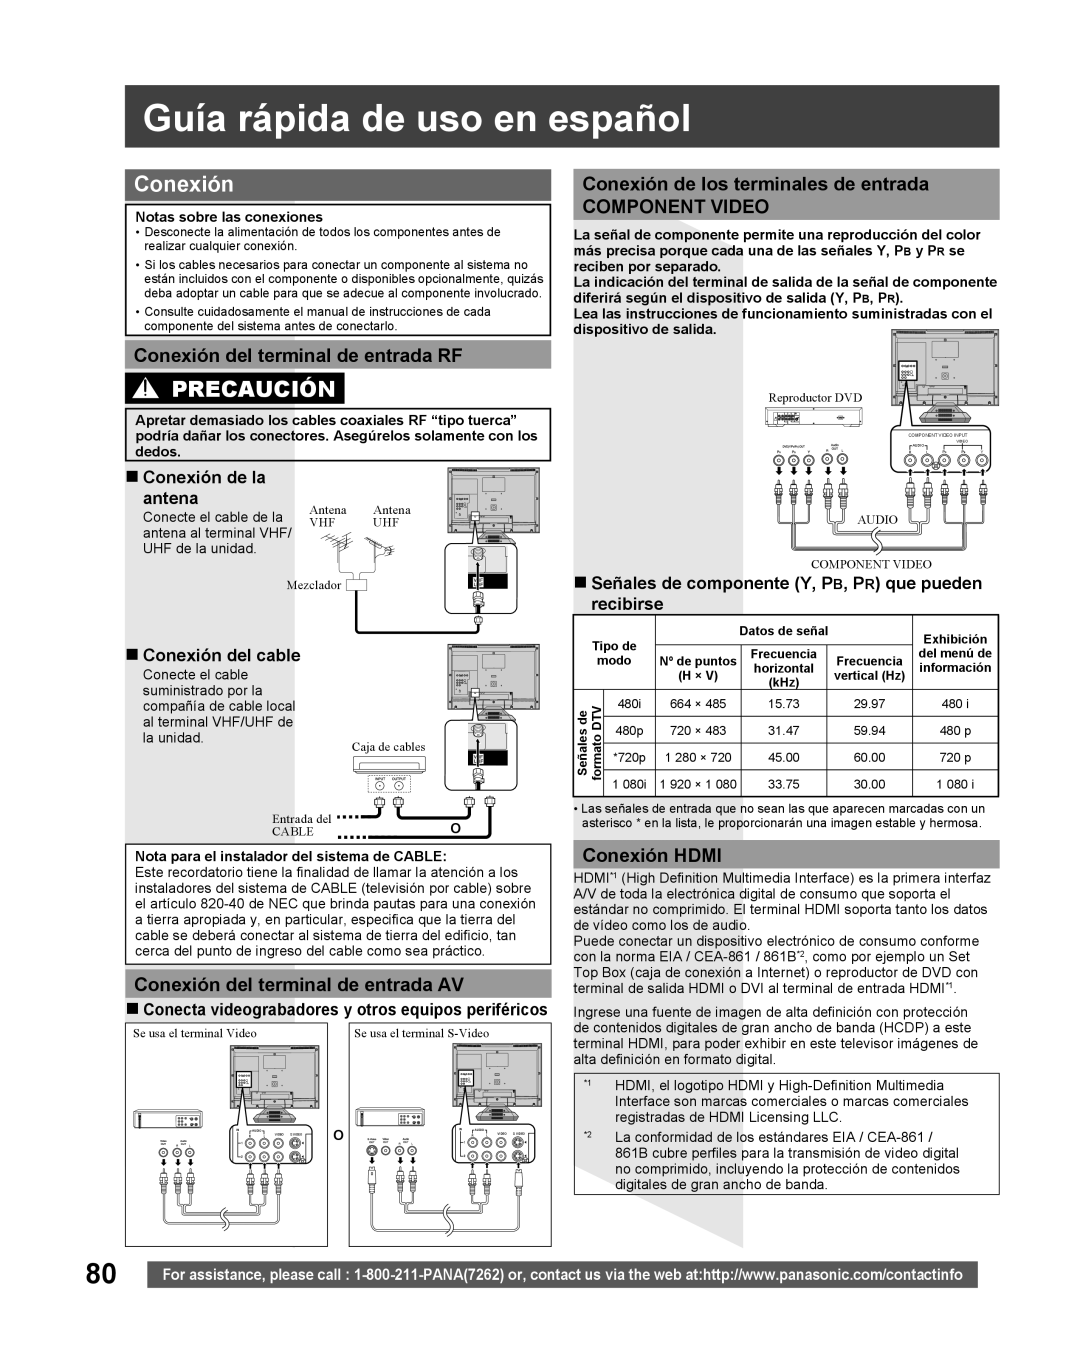 Panasonic TC 22LR30 Guía rápida de uso en español, Precaución, Conexión del terminal de entrada RF, Conexión HDMI 